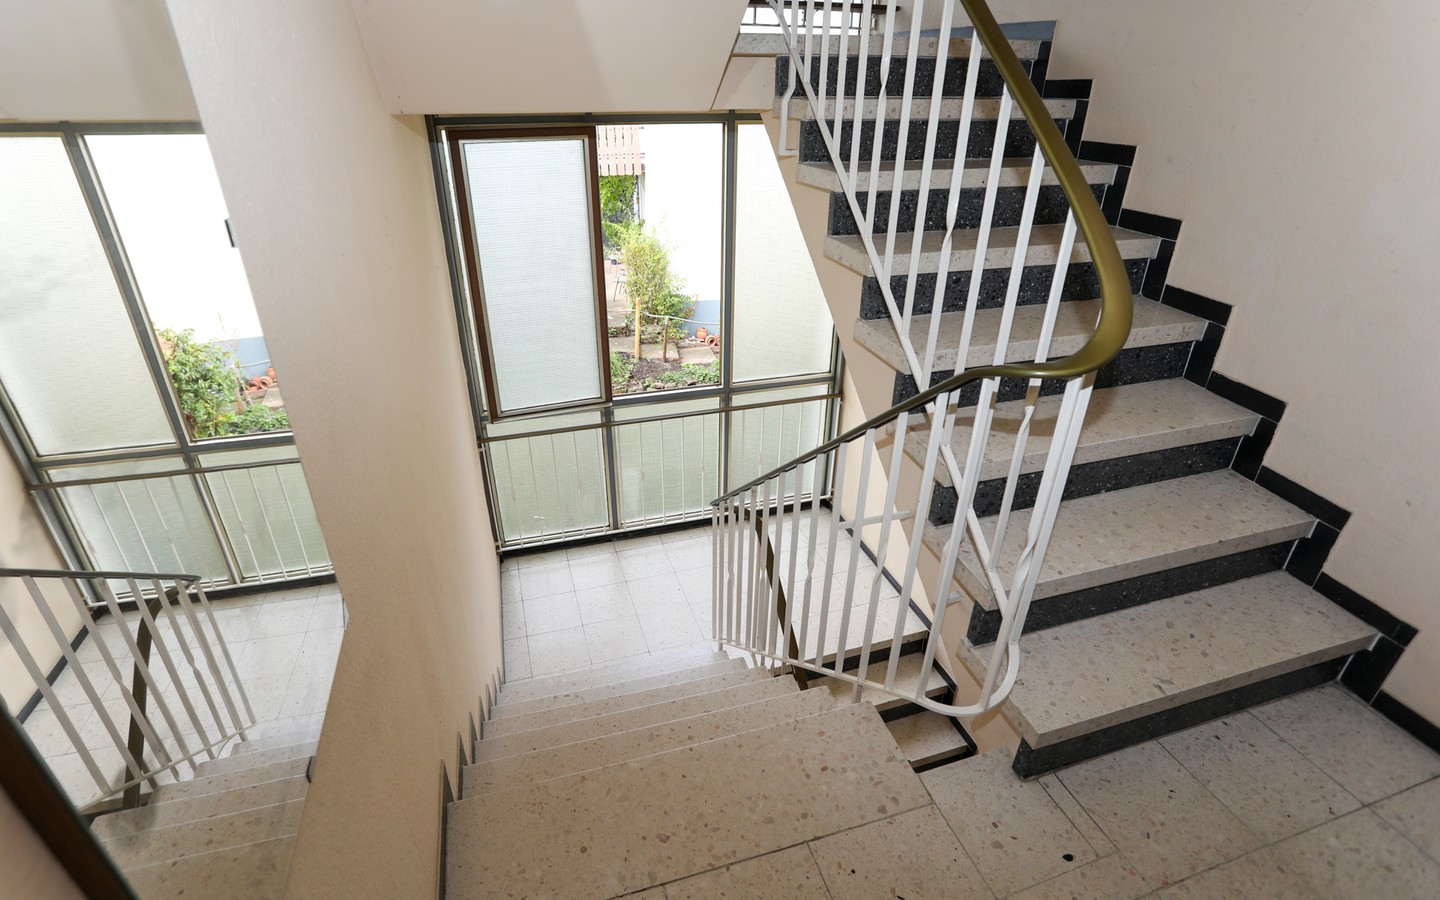 Treppenhaus - Eppelheim: MFH auf großem Erbpachtgrundstück in 
familienfreundlicher Wohnlage zur flexiblen Nutzung